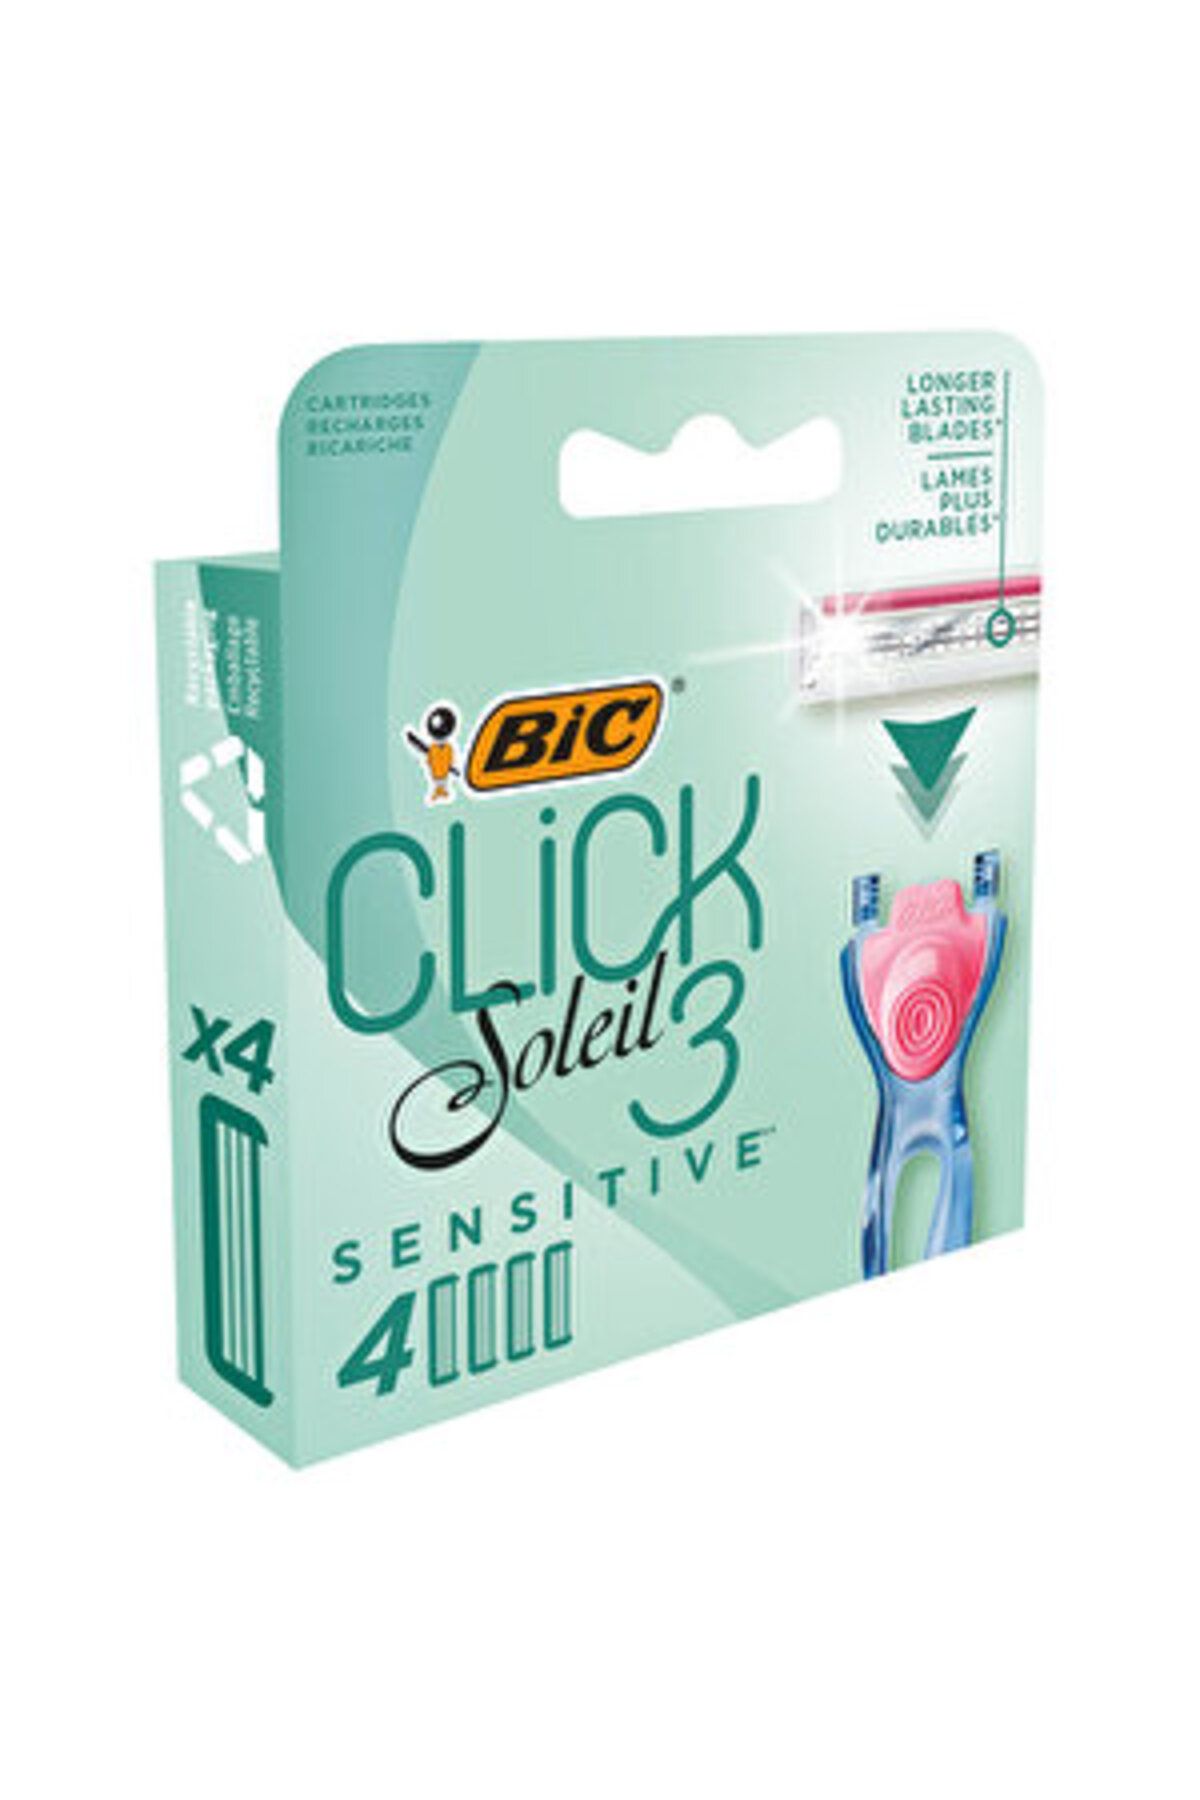 Bic Soleil Click 3 Sistem Kadın Tıraş Bıçağı 4'lü Yedek Kartuş ( 1 ADET )